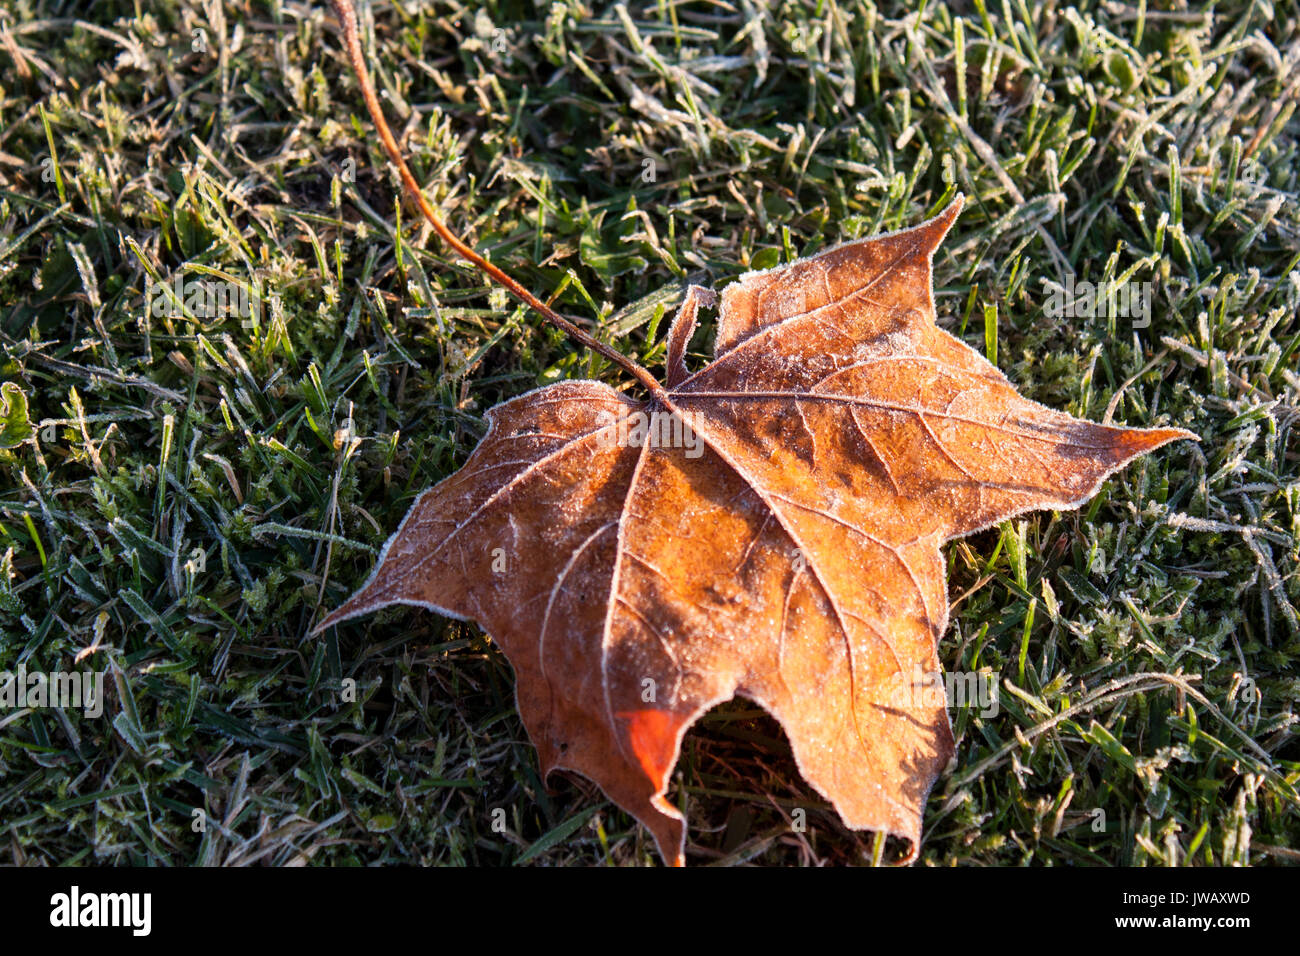 A golden maple leaf fallen on a frozen grass Stock Photo